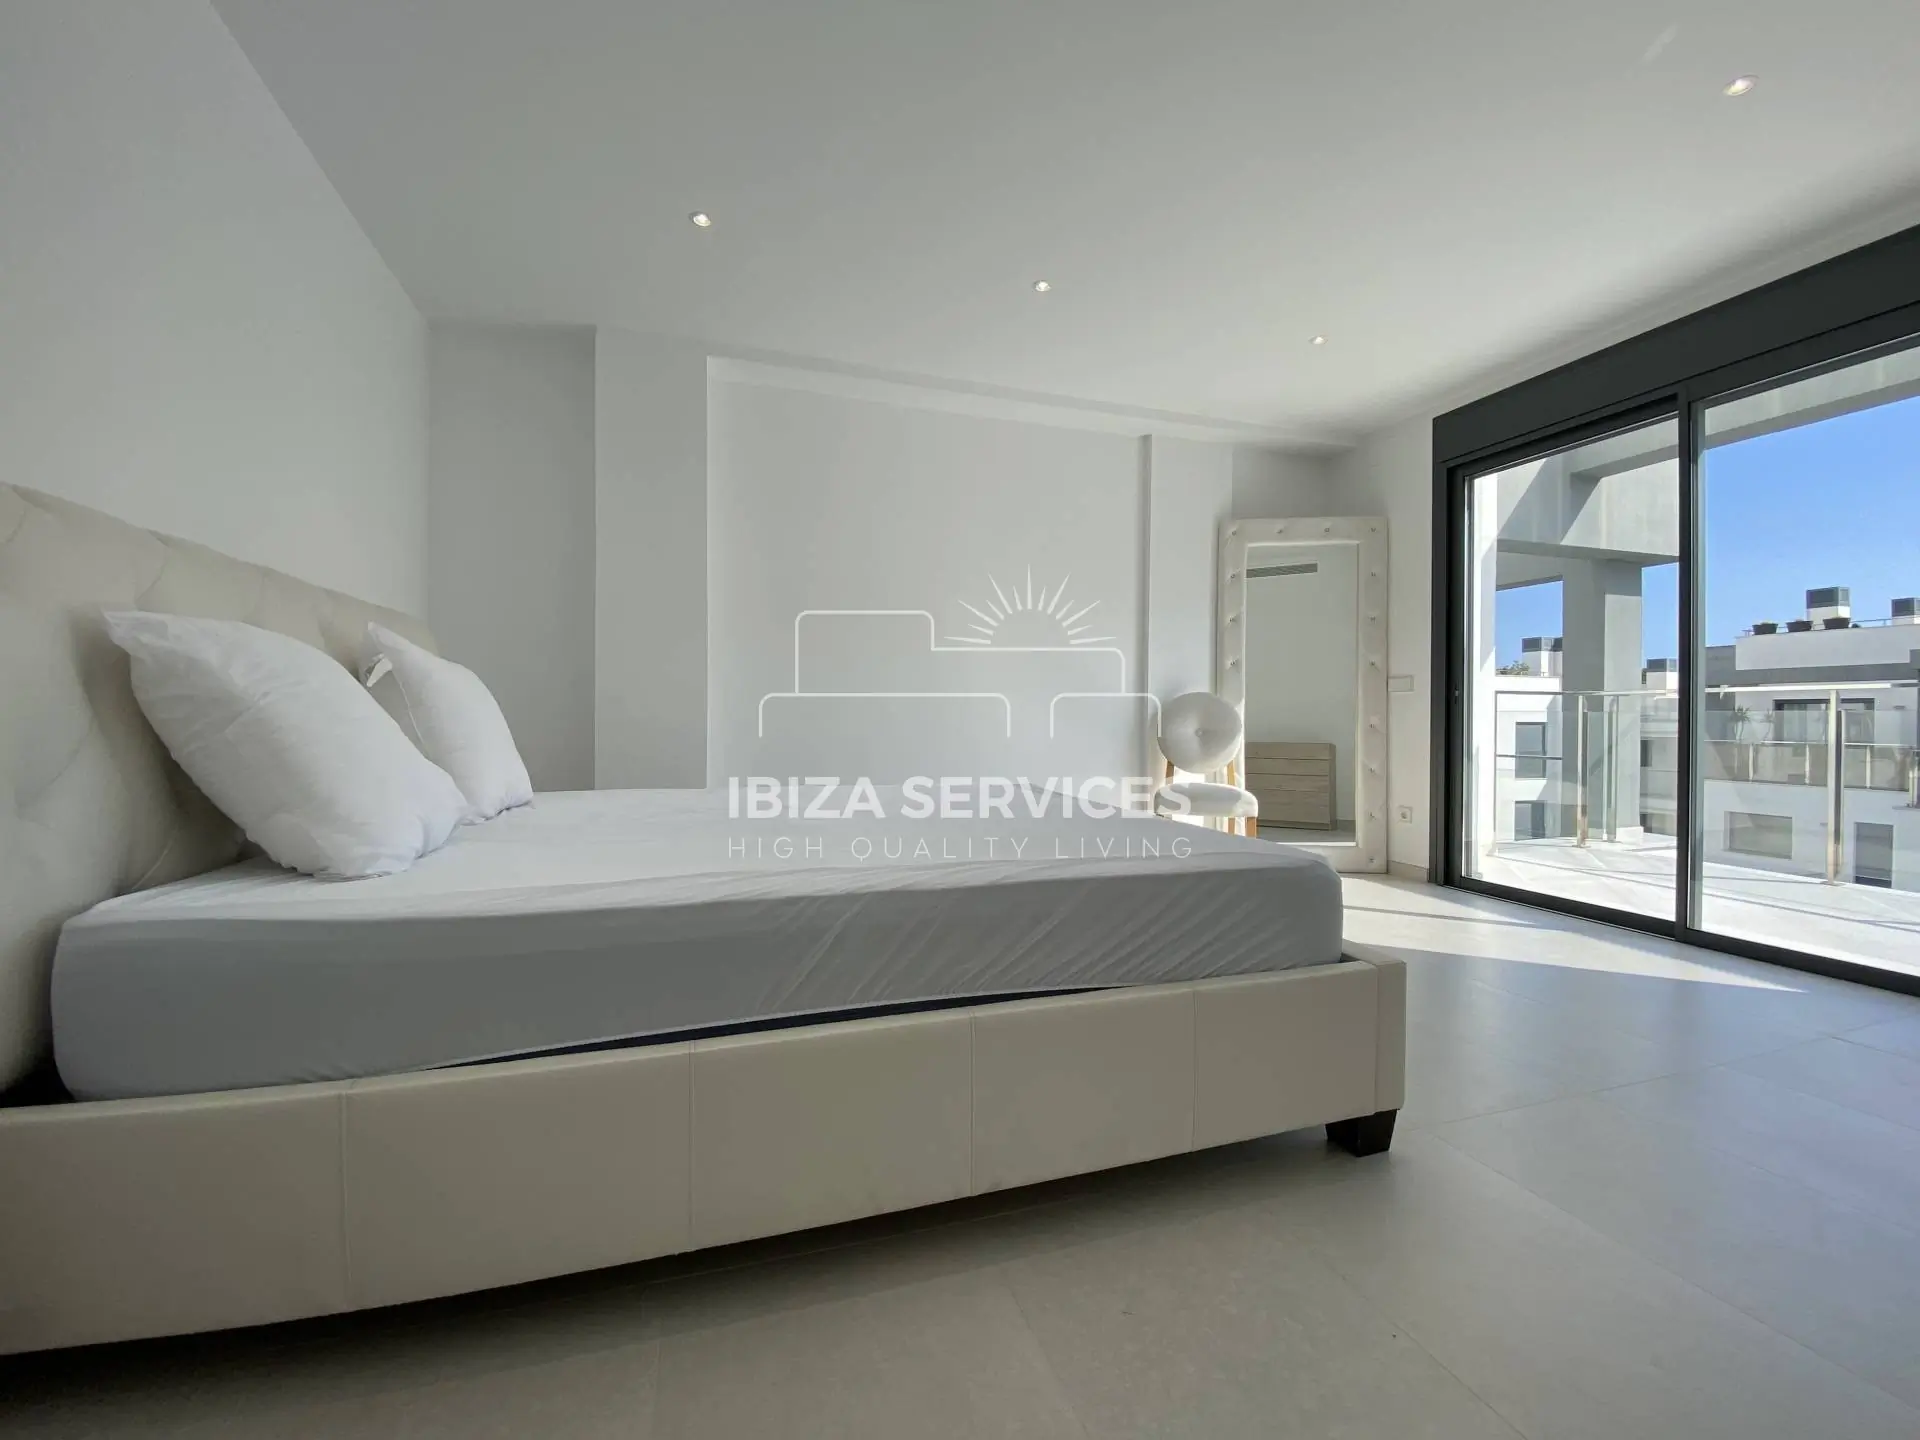 Comfortabel penthouse met drie slaapkamers te koop in Santa Eulalia – Ibiza.